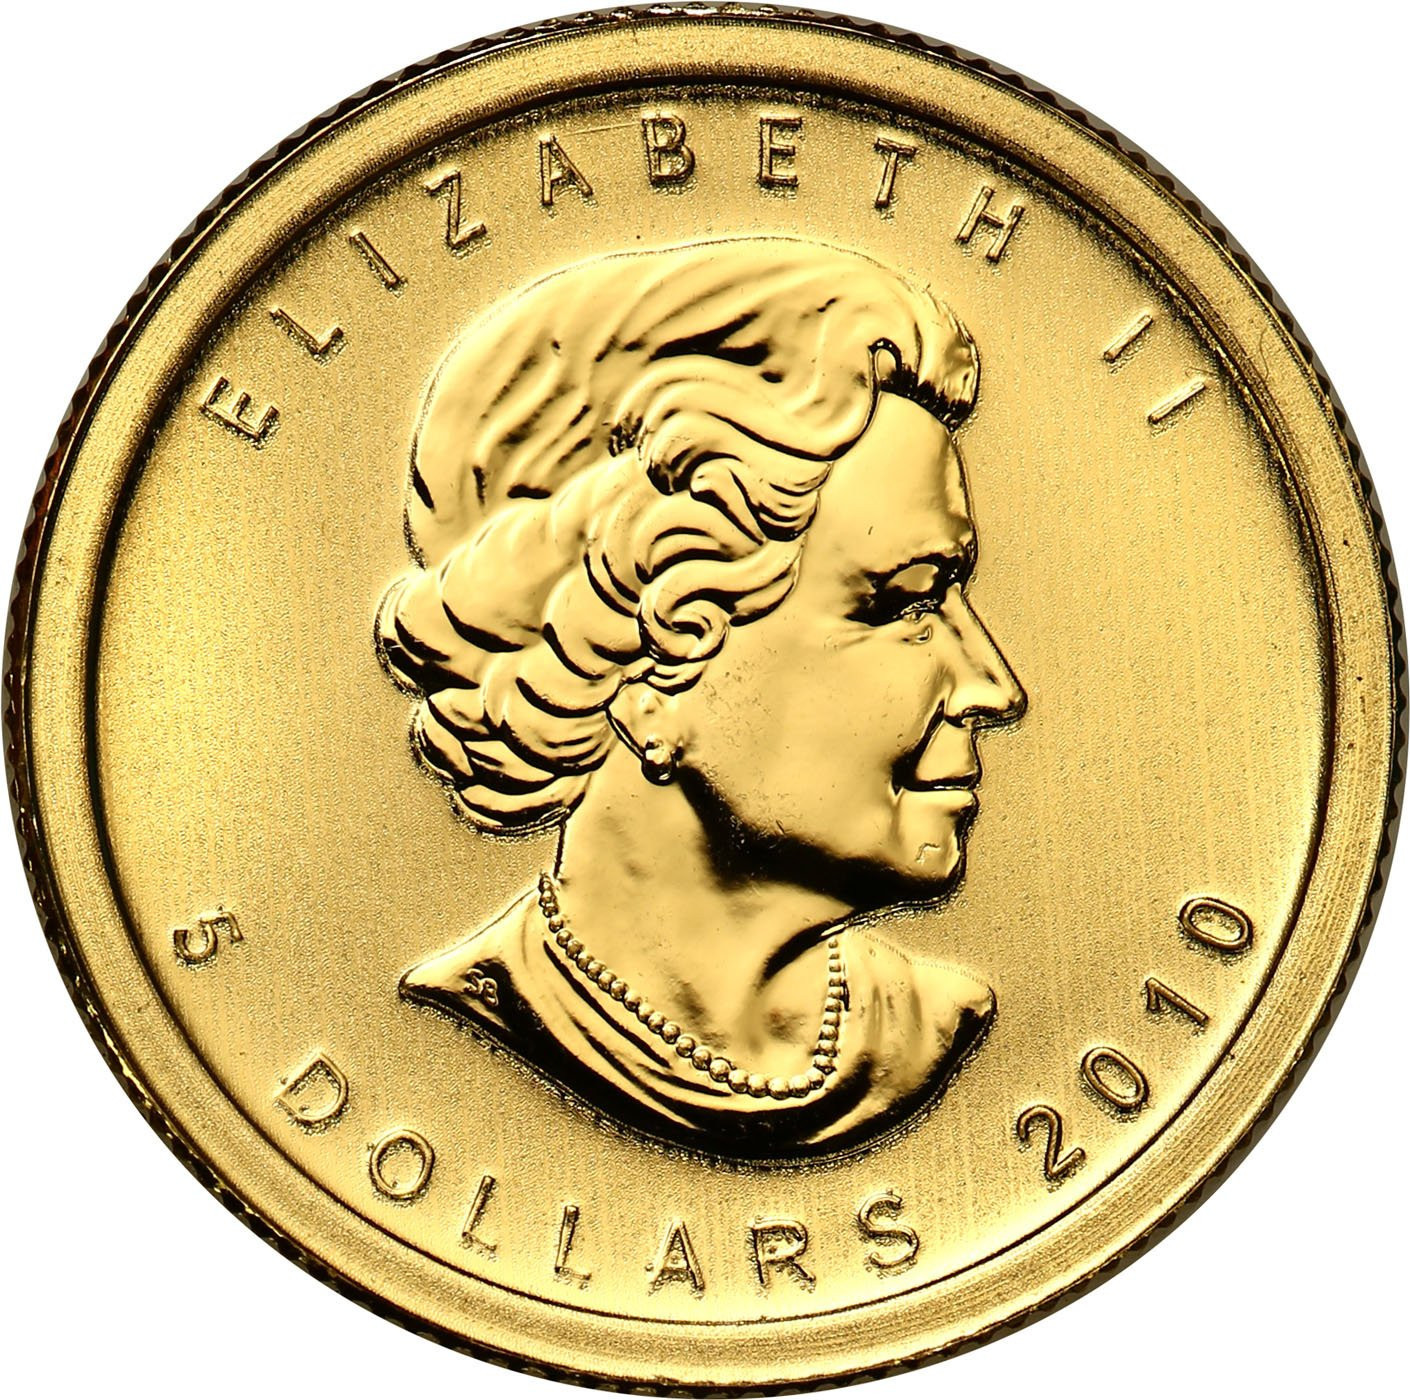 Kanada. Złoty Liść klonowy 5 dolarów 2010 - 1/10 uncji złota